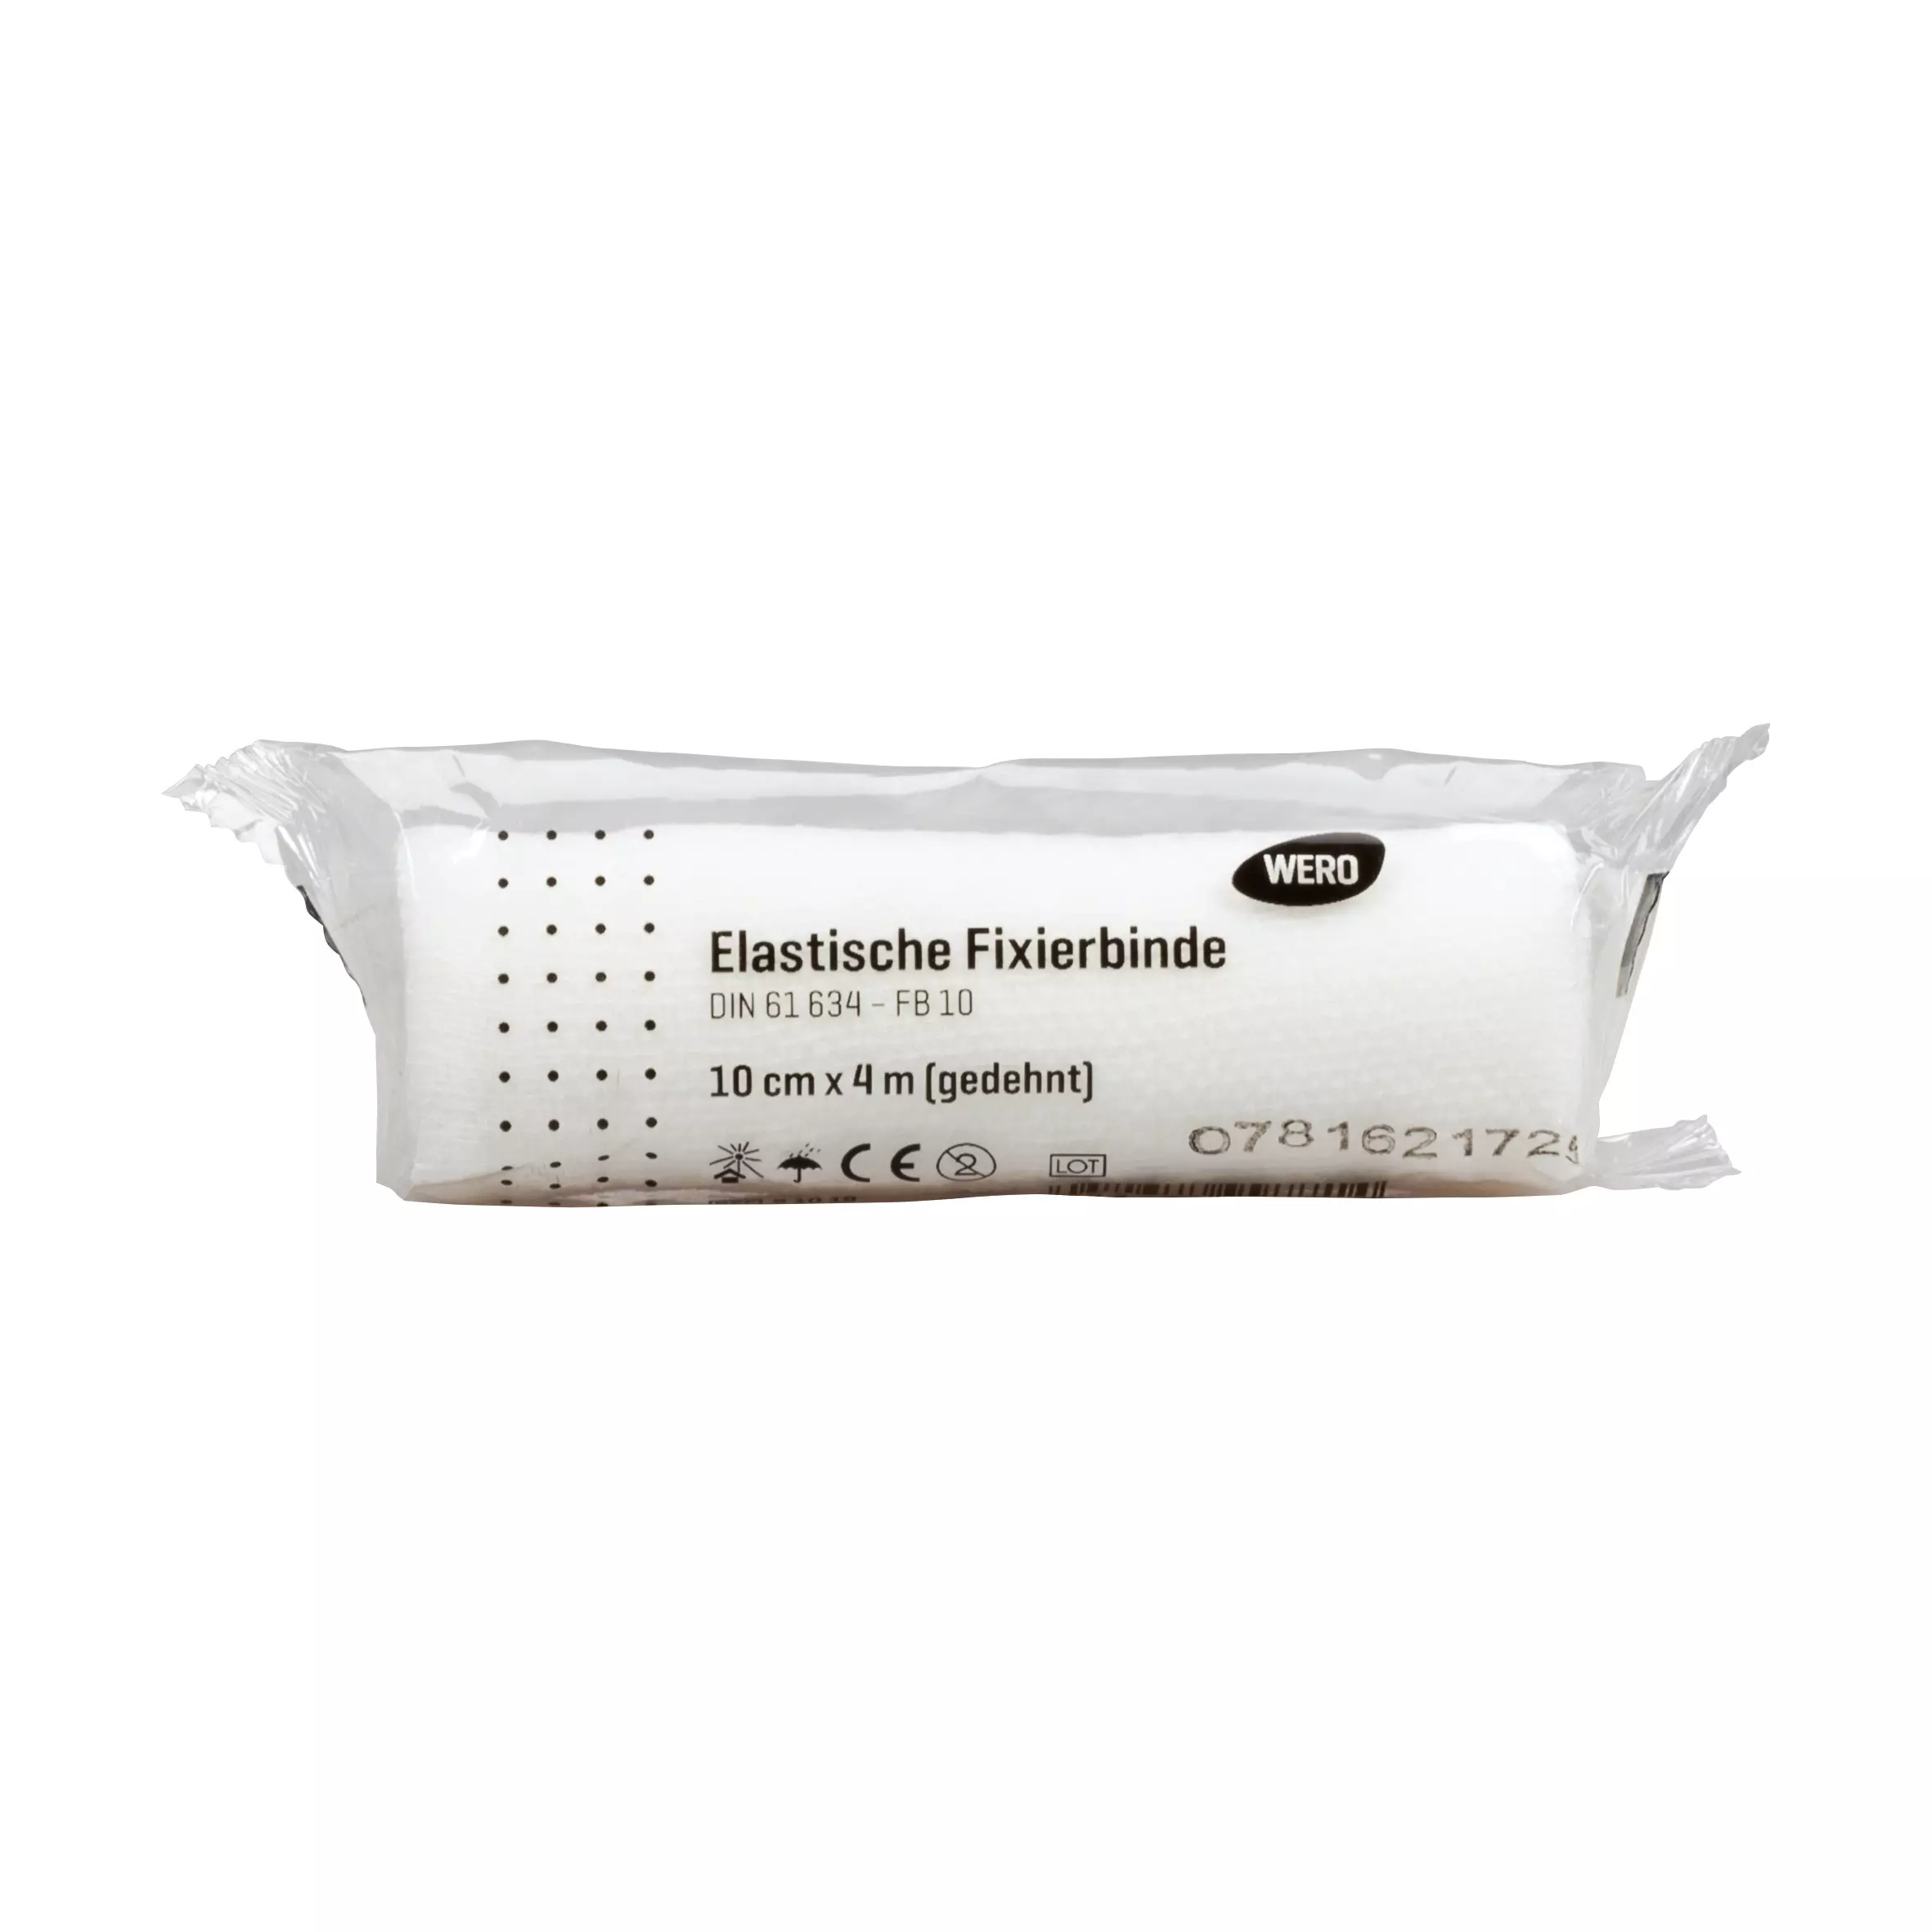 Elastic fixation bandage DIN 61634 - 10 cm, 1 pc